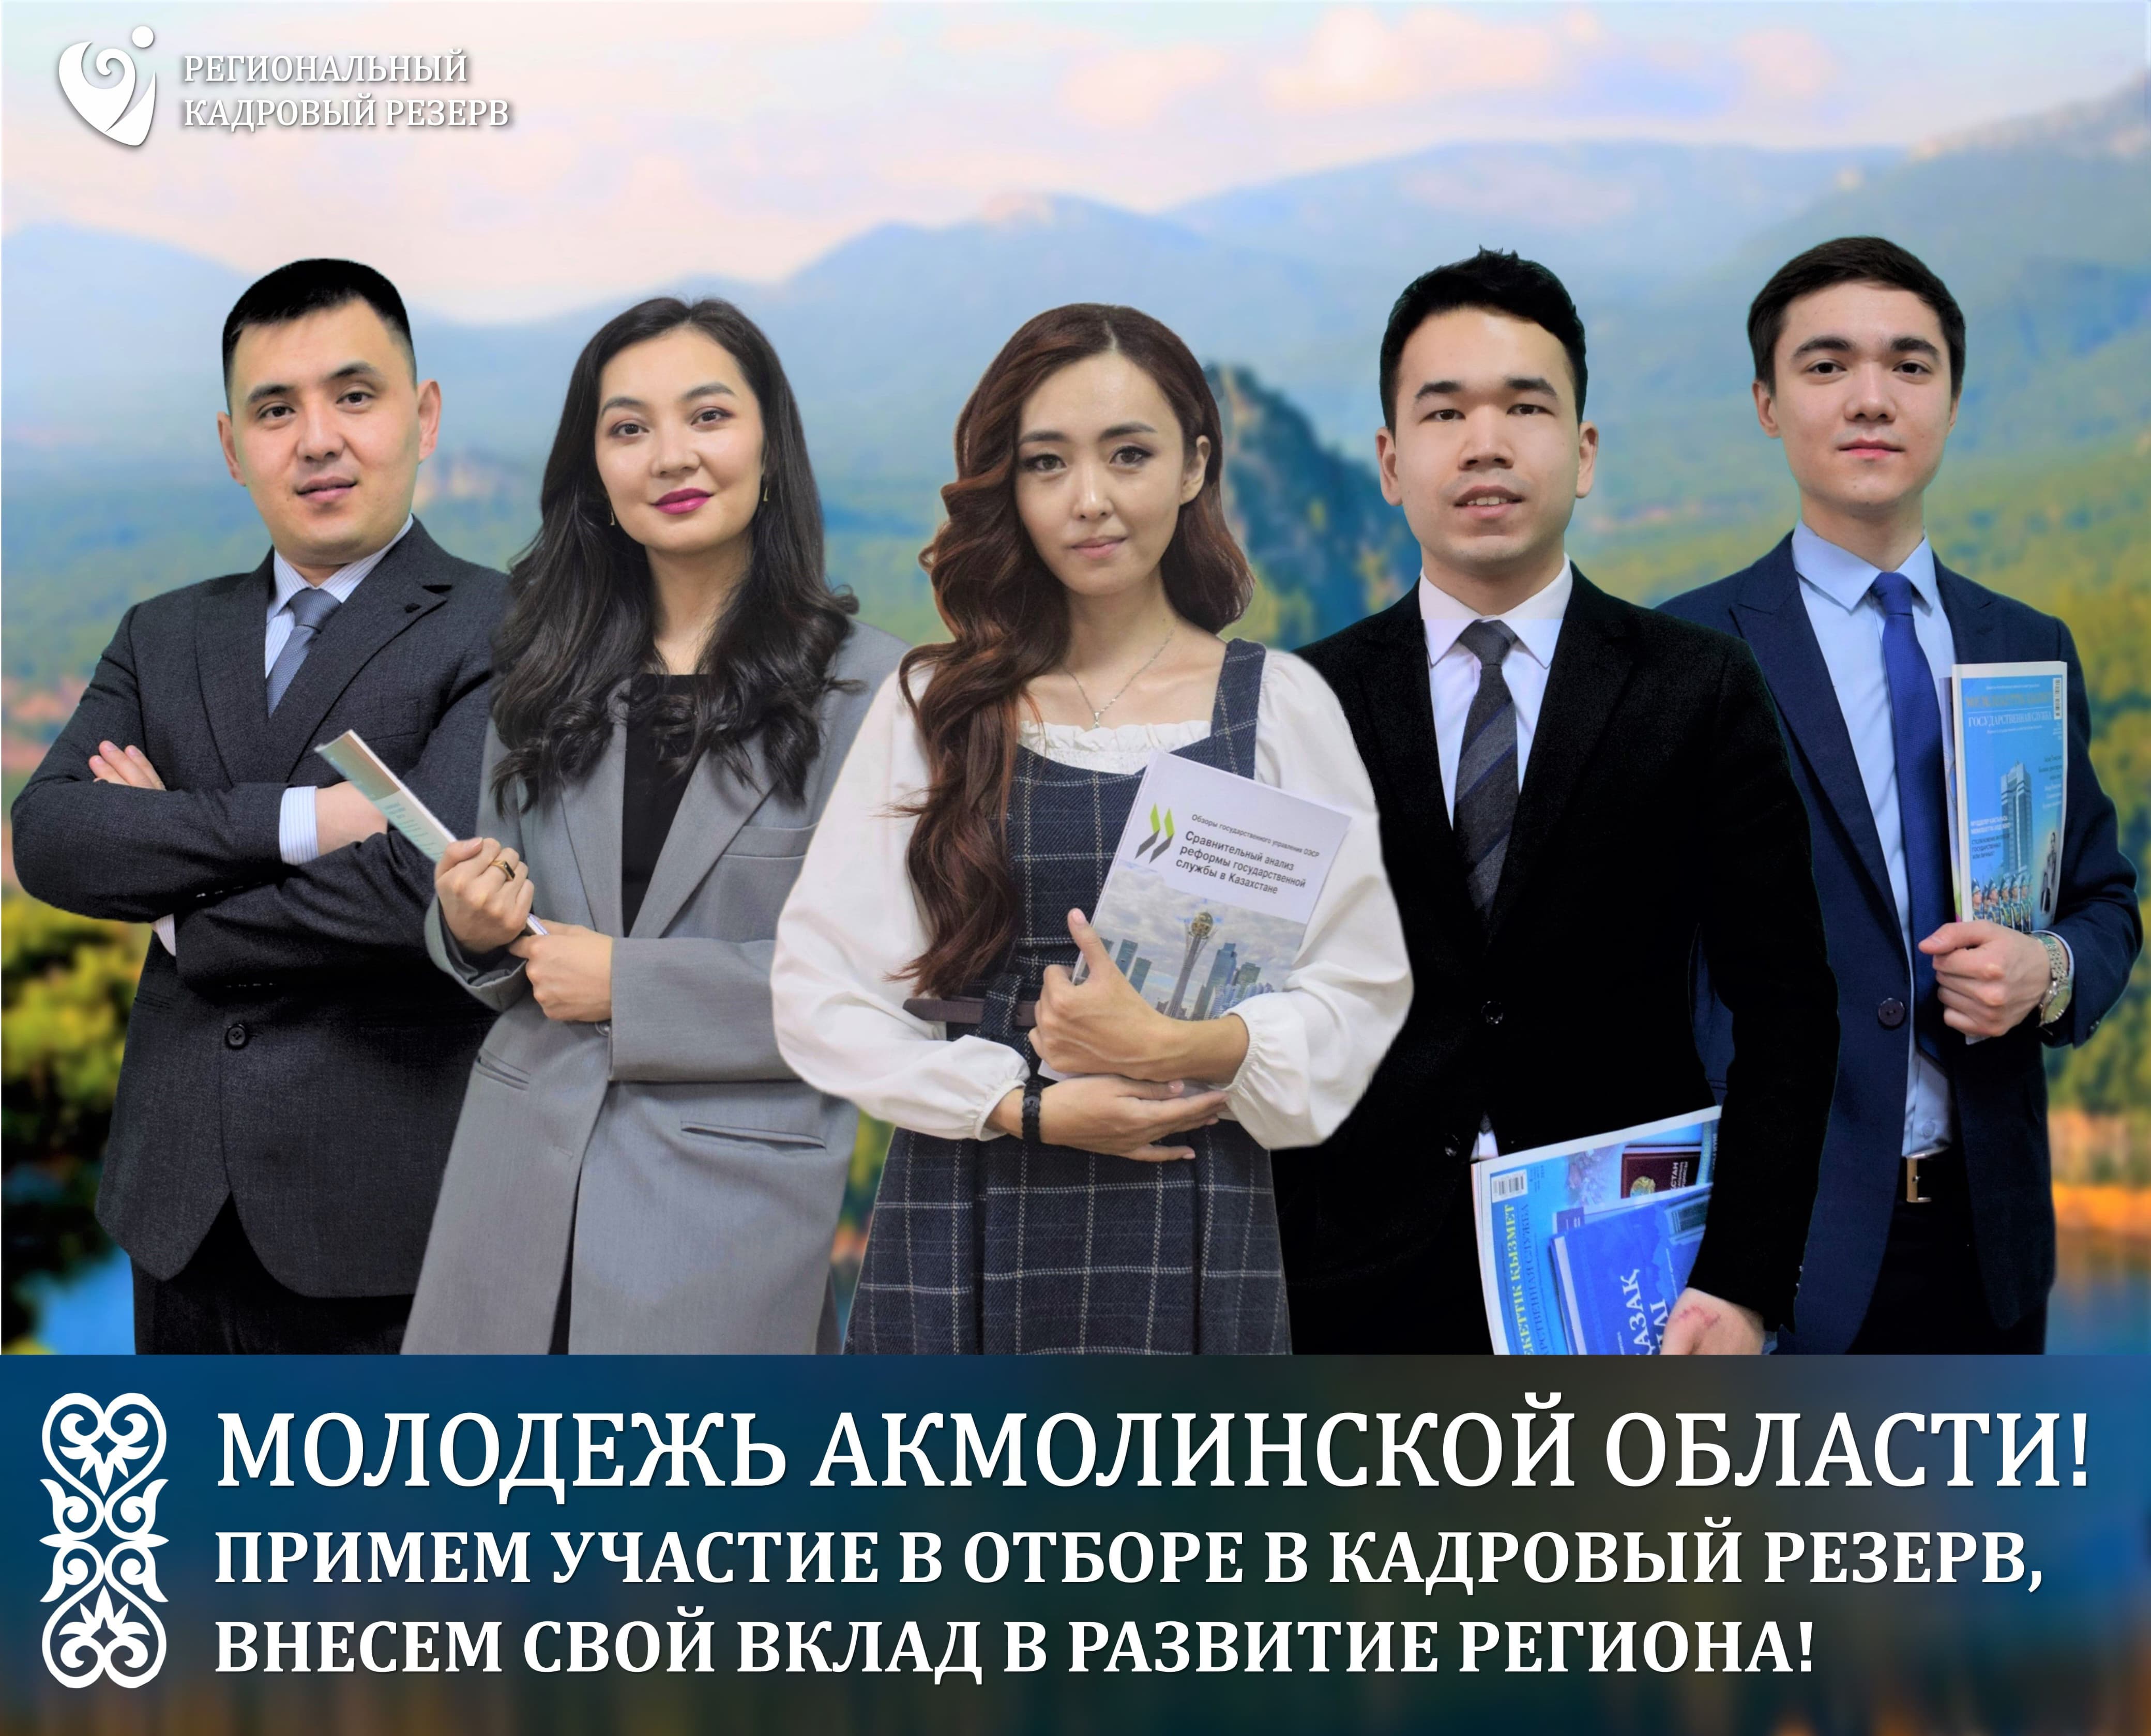 Кадровая комиссия Акмолинской области объявляет об отборе в Региональный кадровый резерв